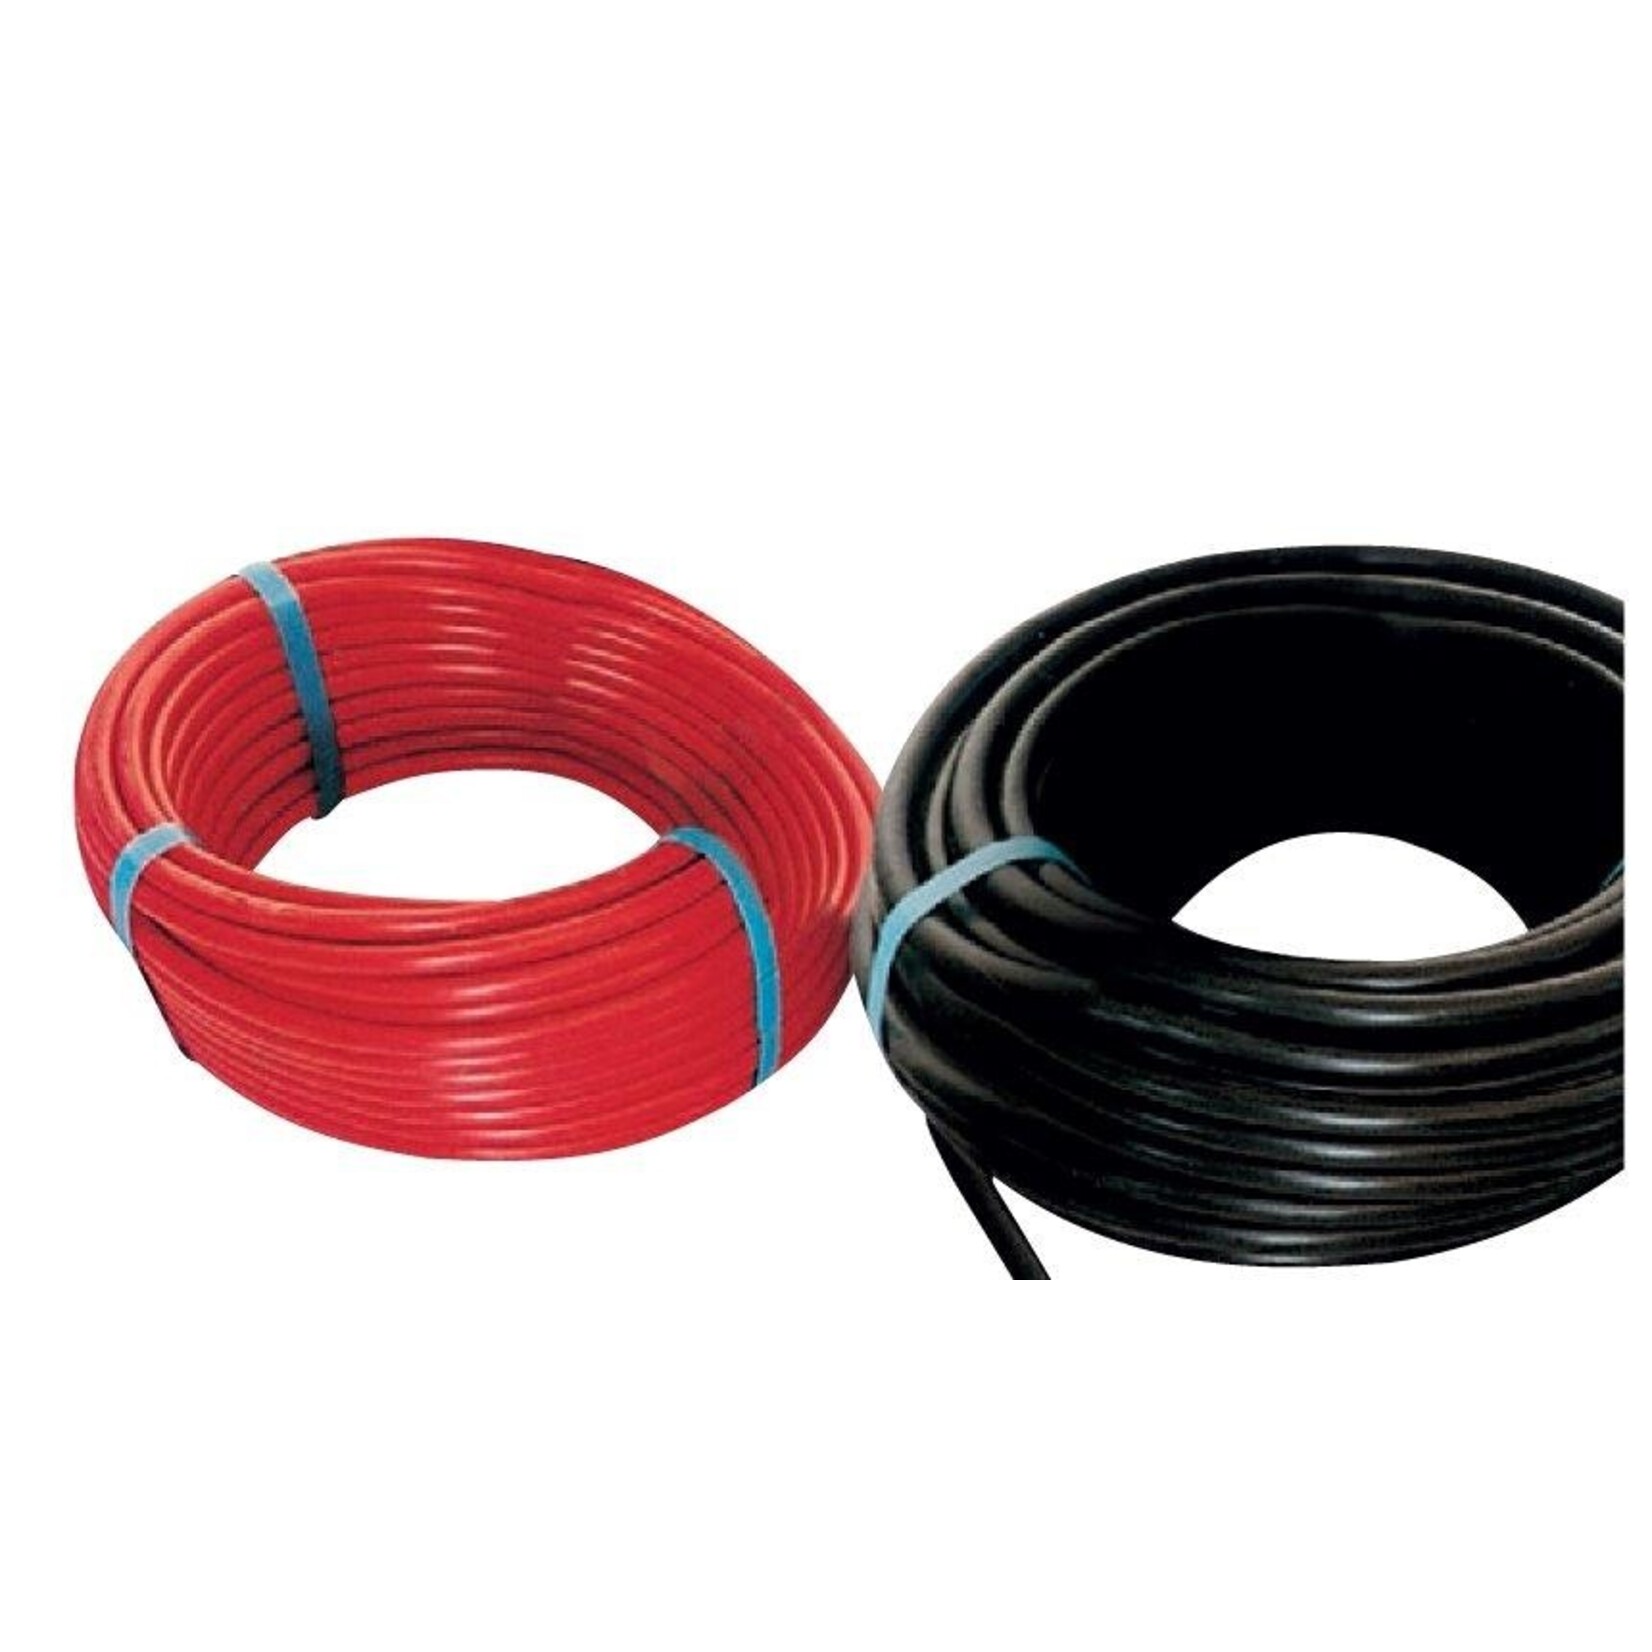 Plastimo Cable 2mm2 black 48au 25m